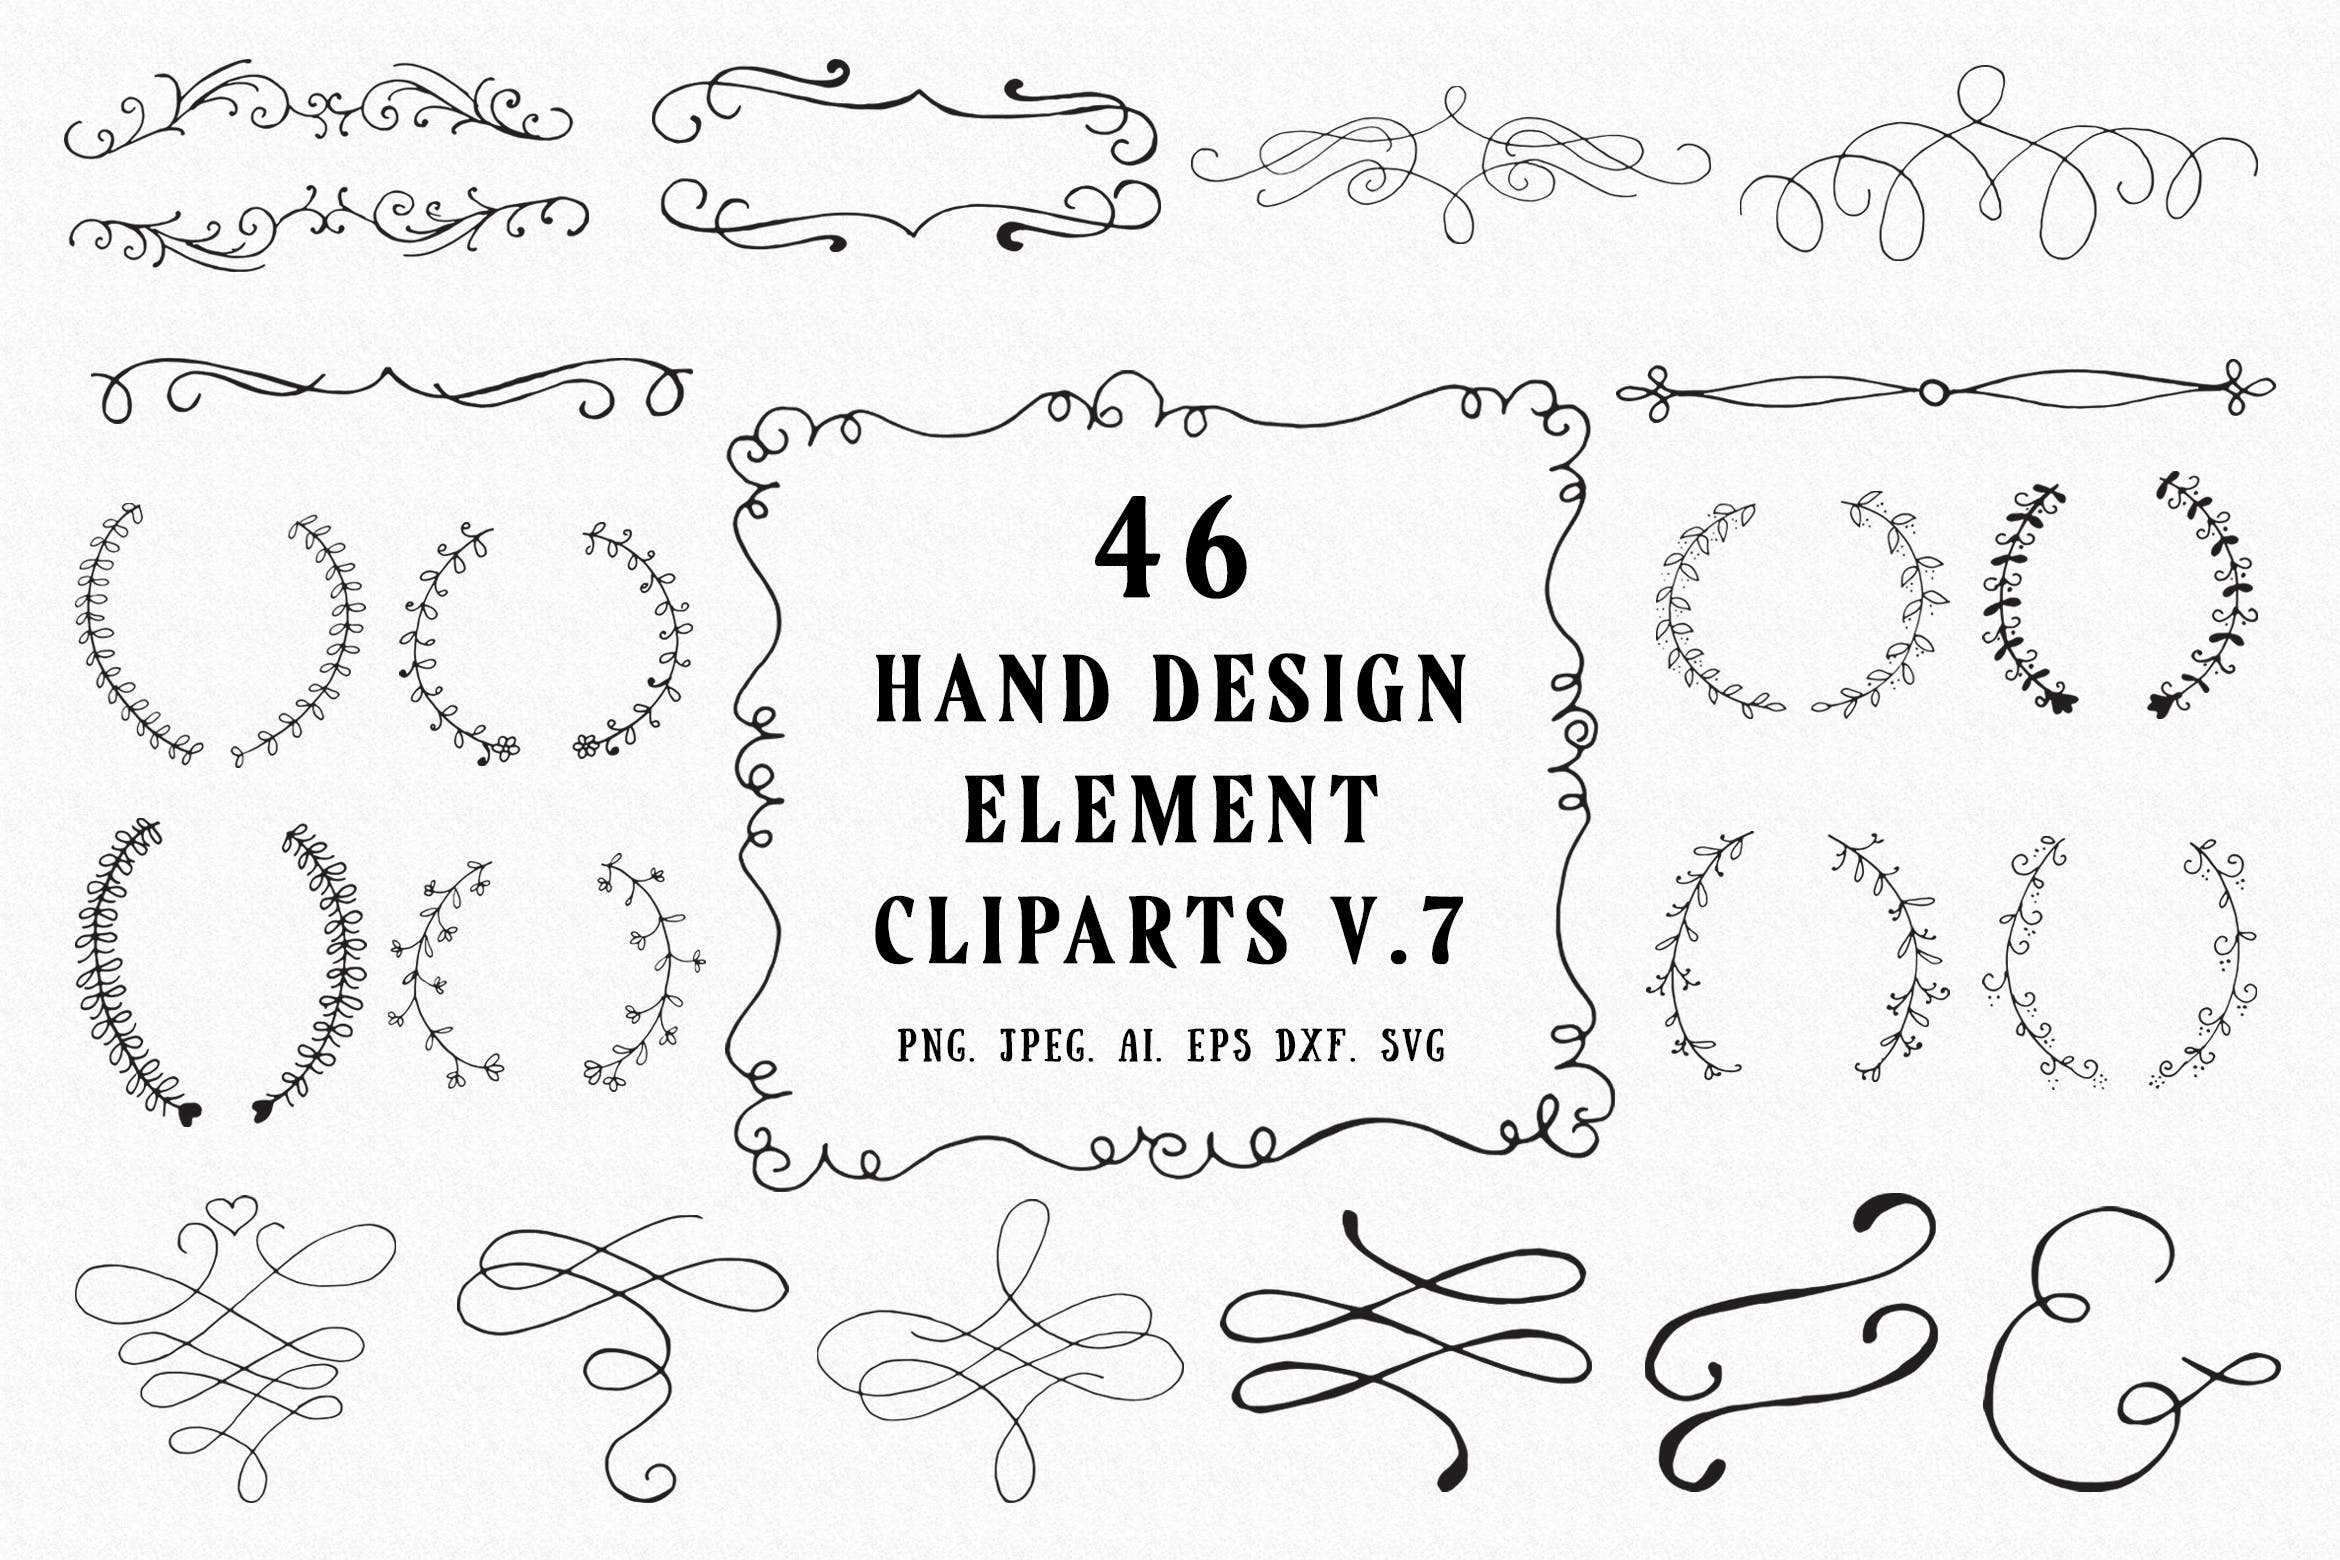 45+手绘装饰元素剪贴画合集v7 45+ Hand Design Element Cliparts Ver. 7插图